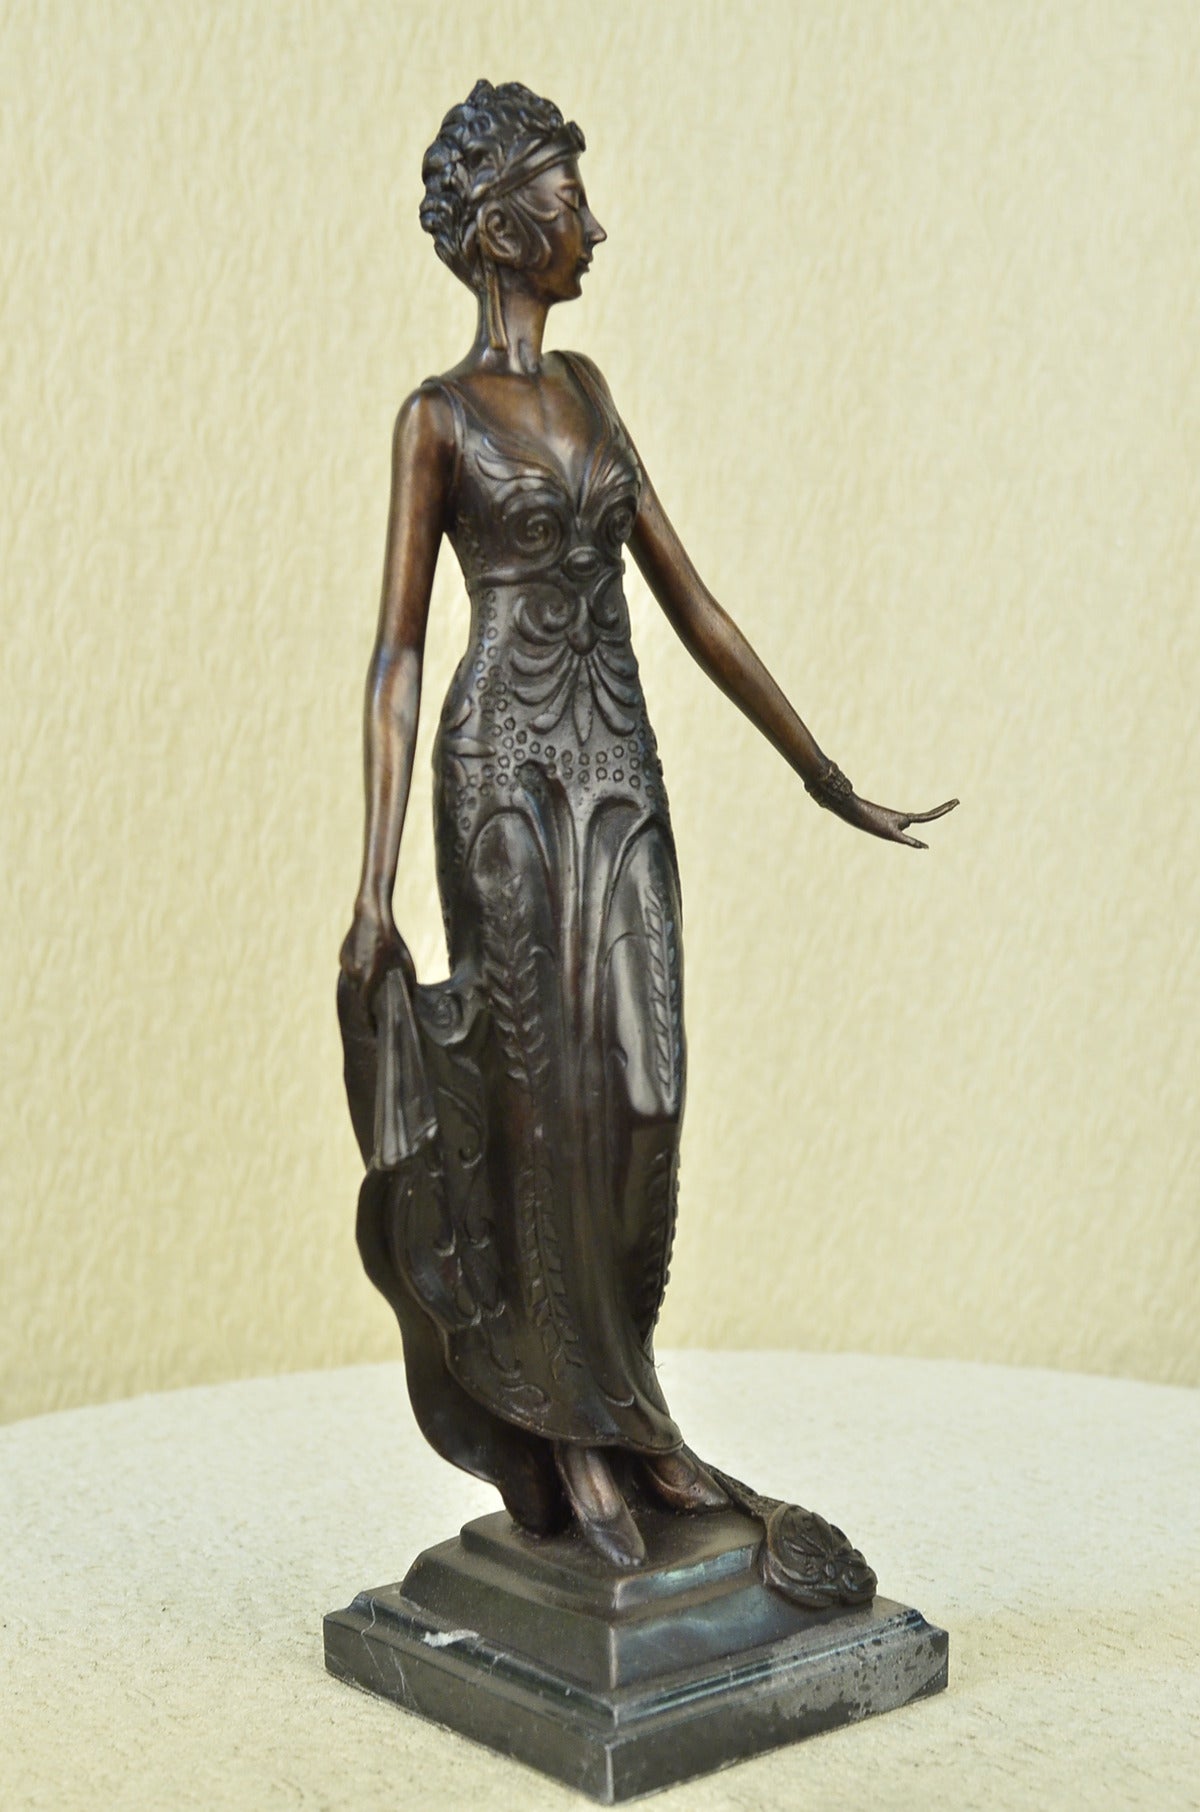 100% Solid Bronze Sculpture Art Deco/Nouveau Gorgeous Woman Lost Wax Method